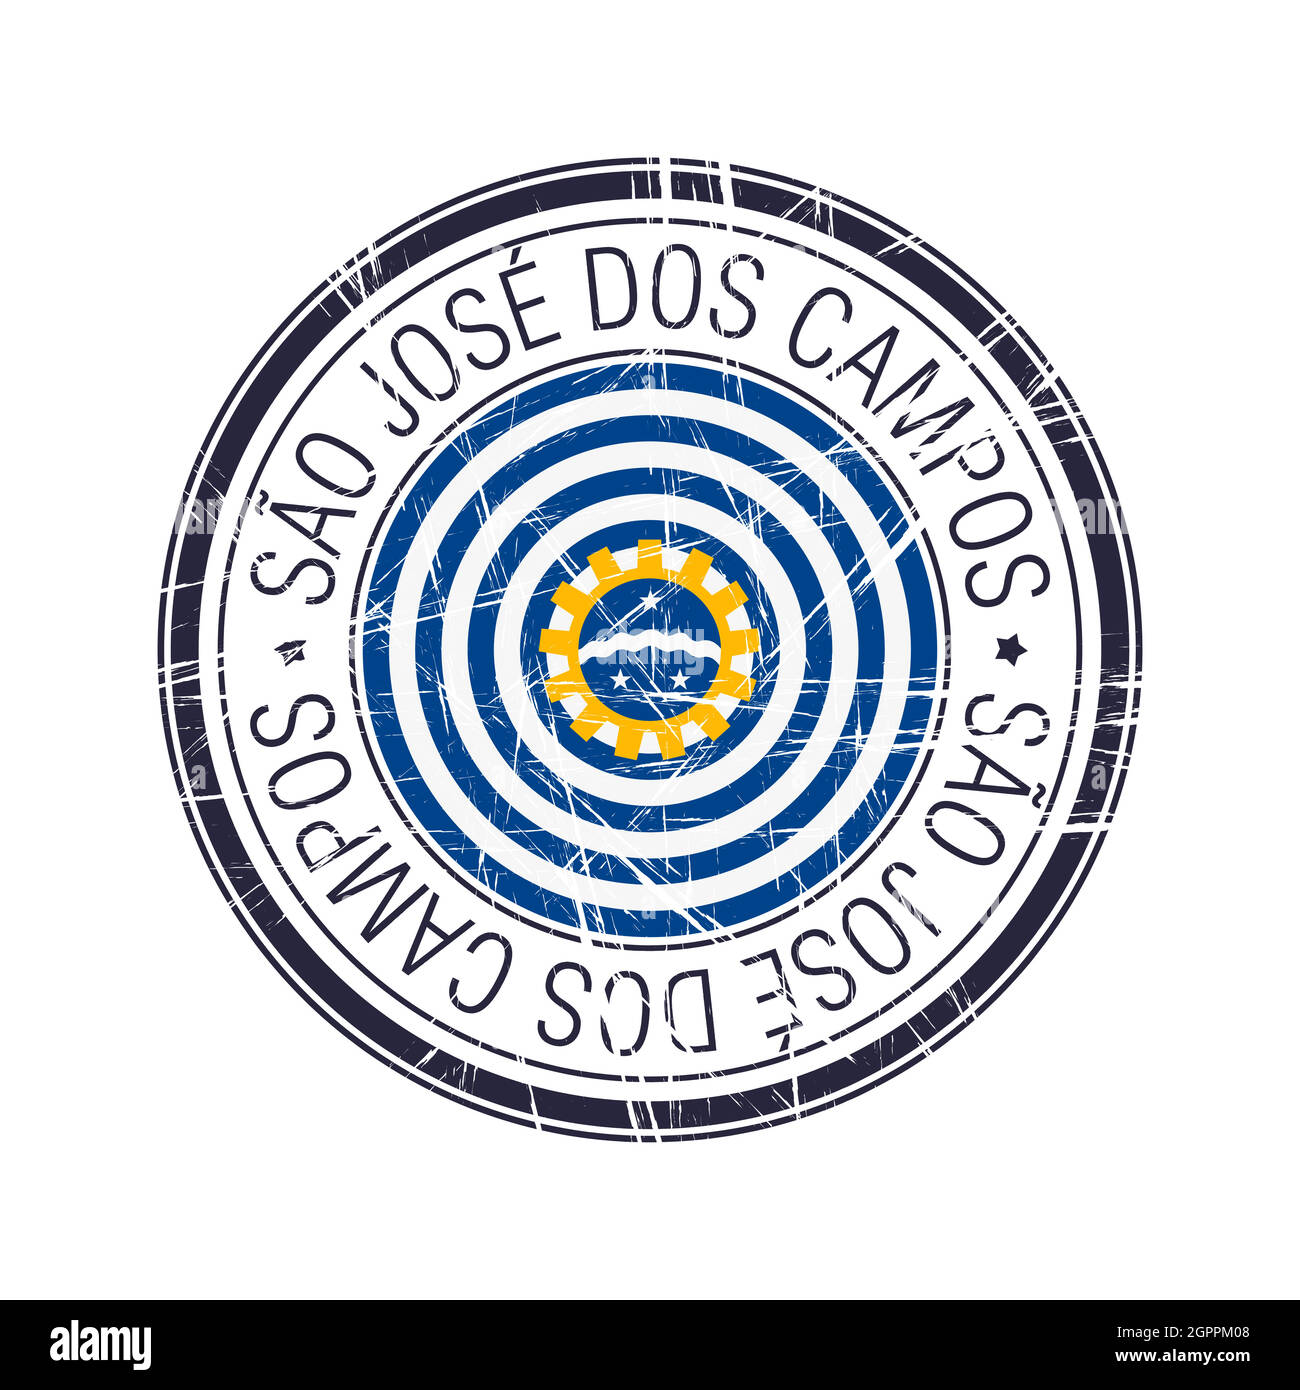 City of Sao Jose Dos Campos, Brazil vector stamp Stock Vector